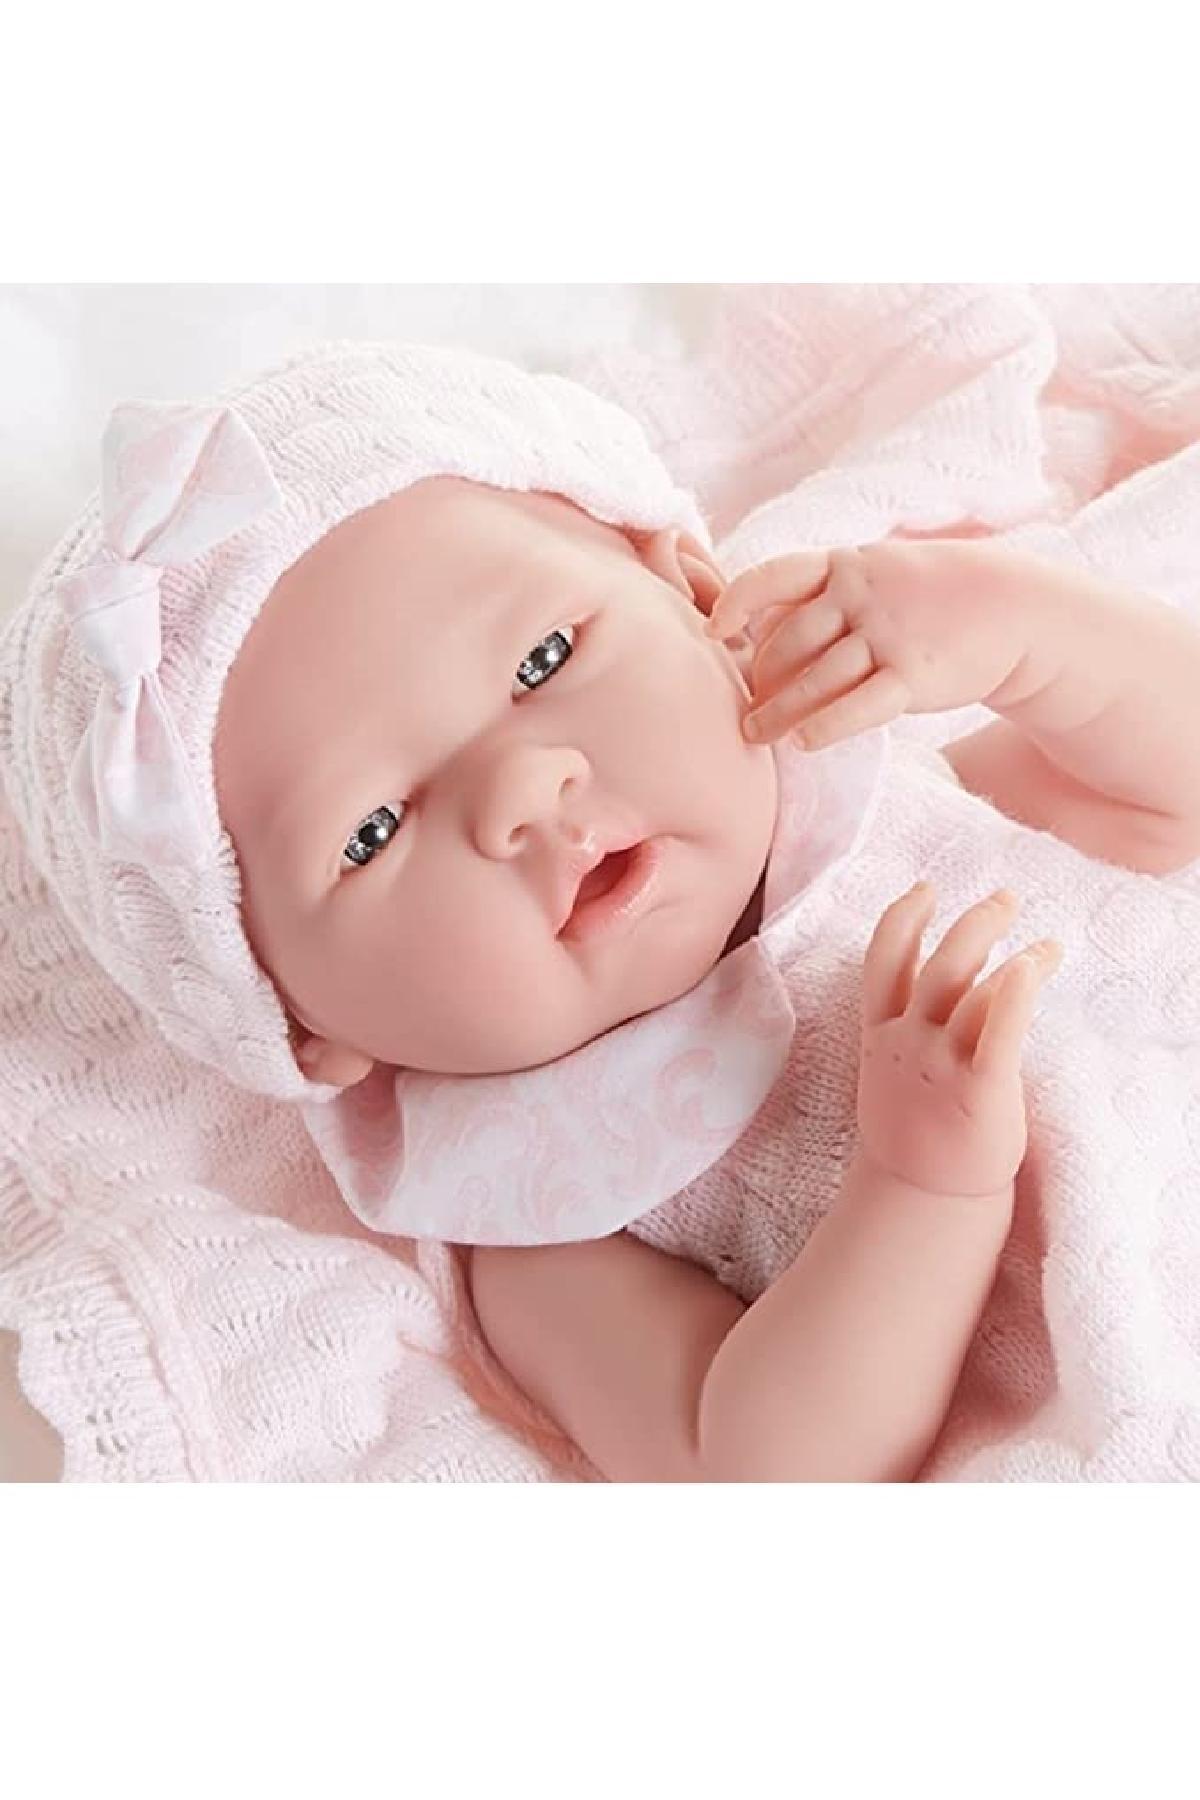 عروسک سیلیکونی نوزاد طبیعی کد.1029